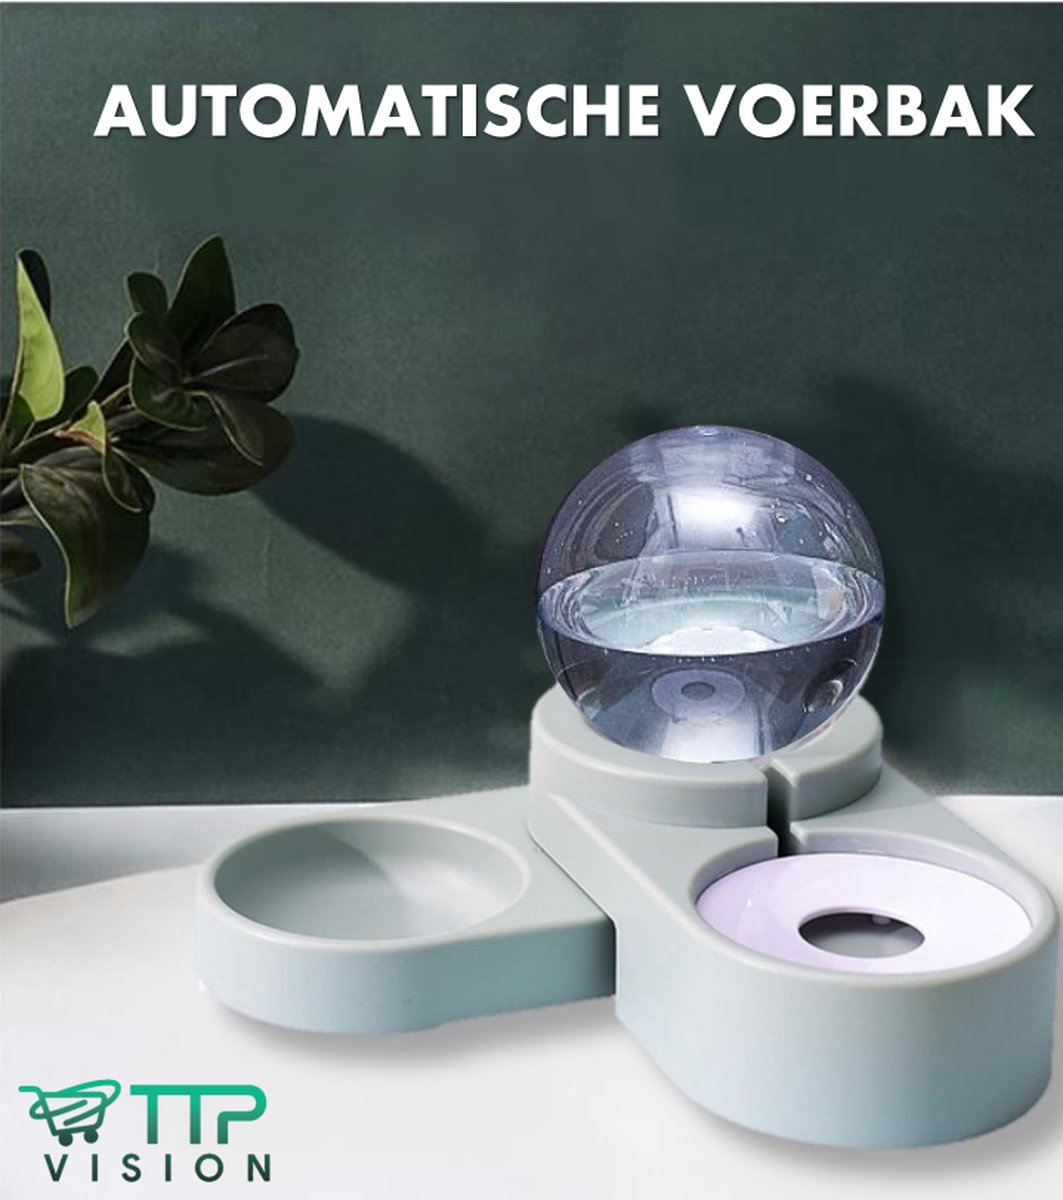 Automatische voerbak inclusief RVS bakje - Voor kat en hond - Automatische drinkbak - Blauw - Automatische waterdispenser - voerbak